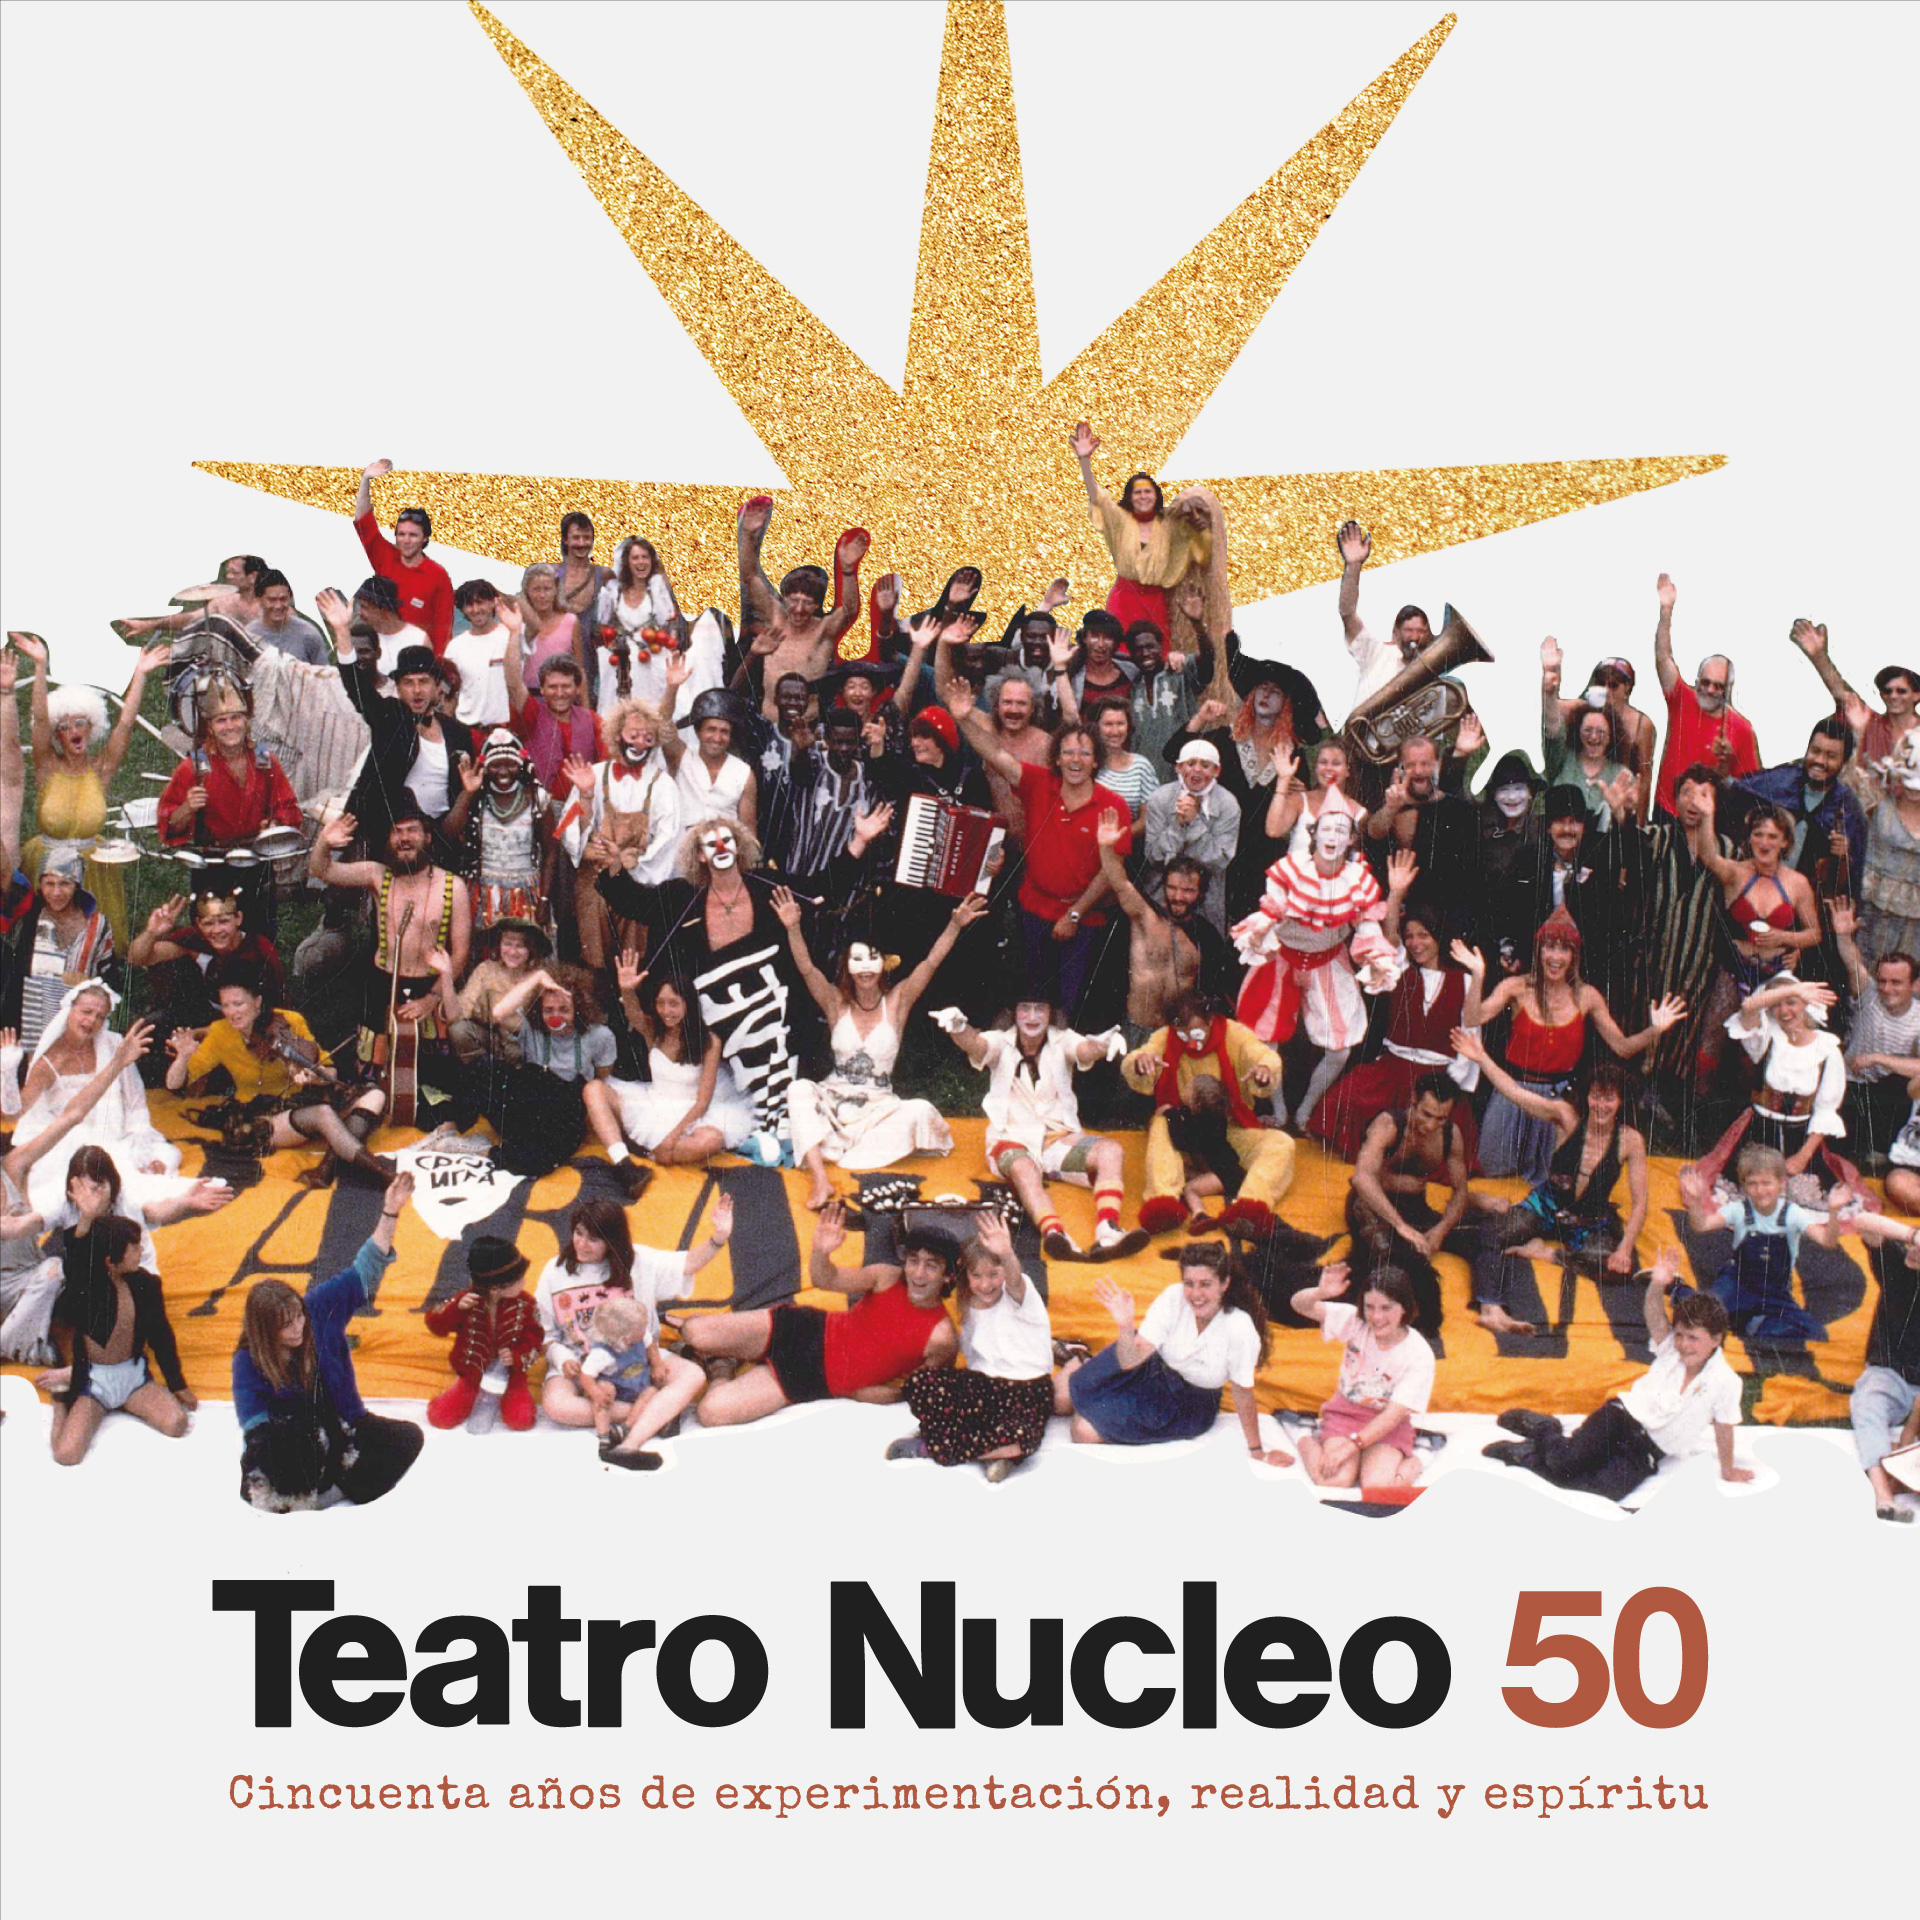 Teatro Nucleo compie 50 anni